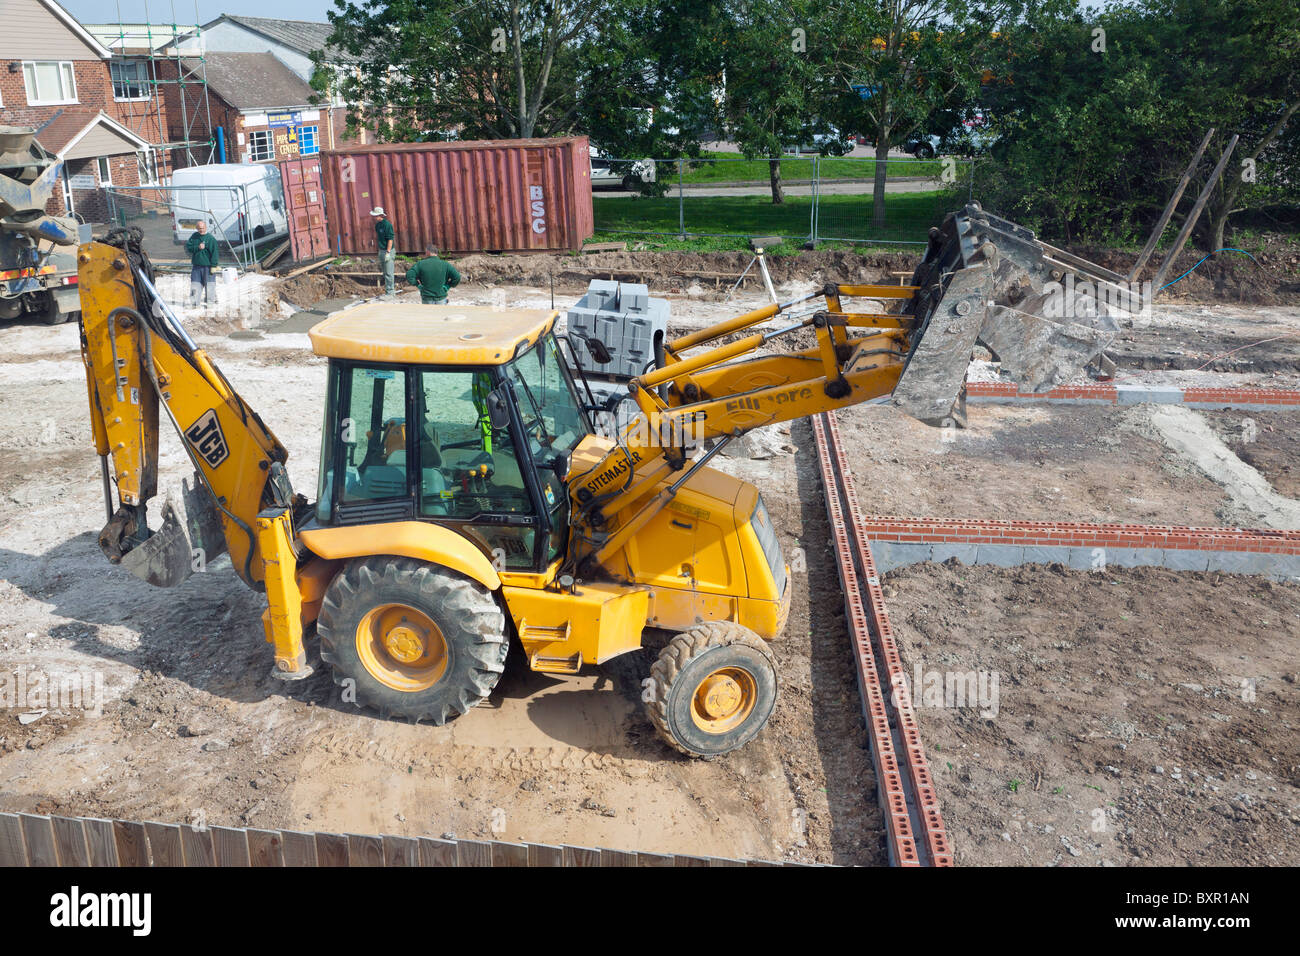 JCB  excavator / back hoe loader on a UK construction site Stock Photo